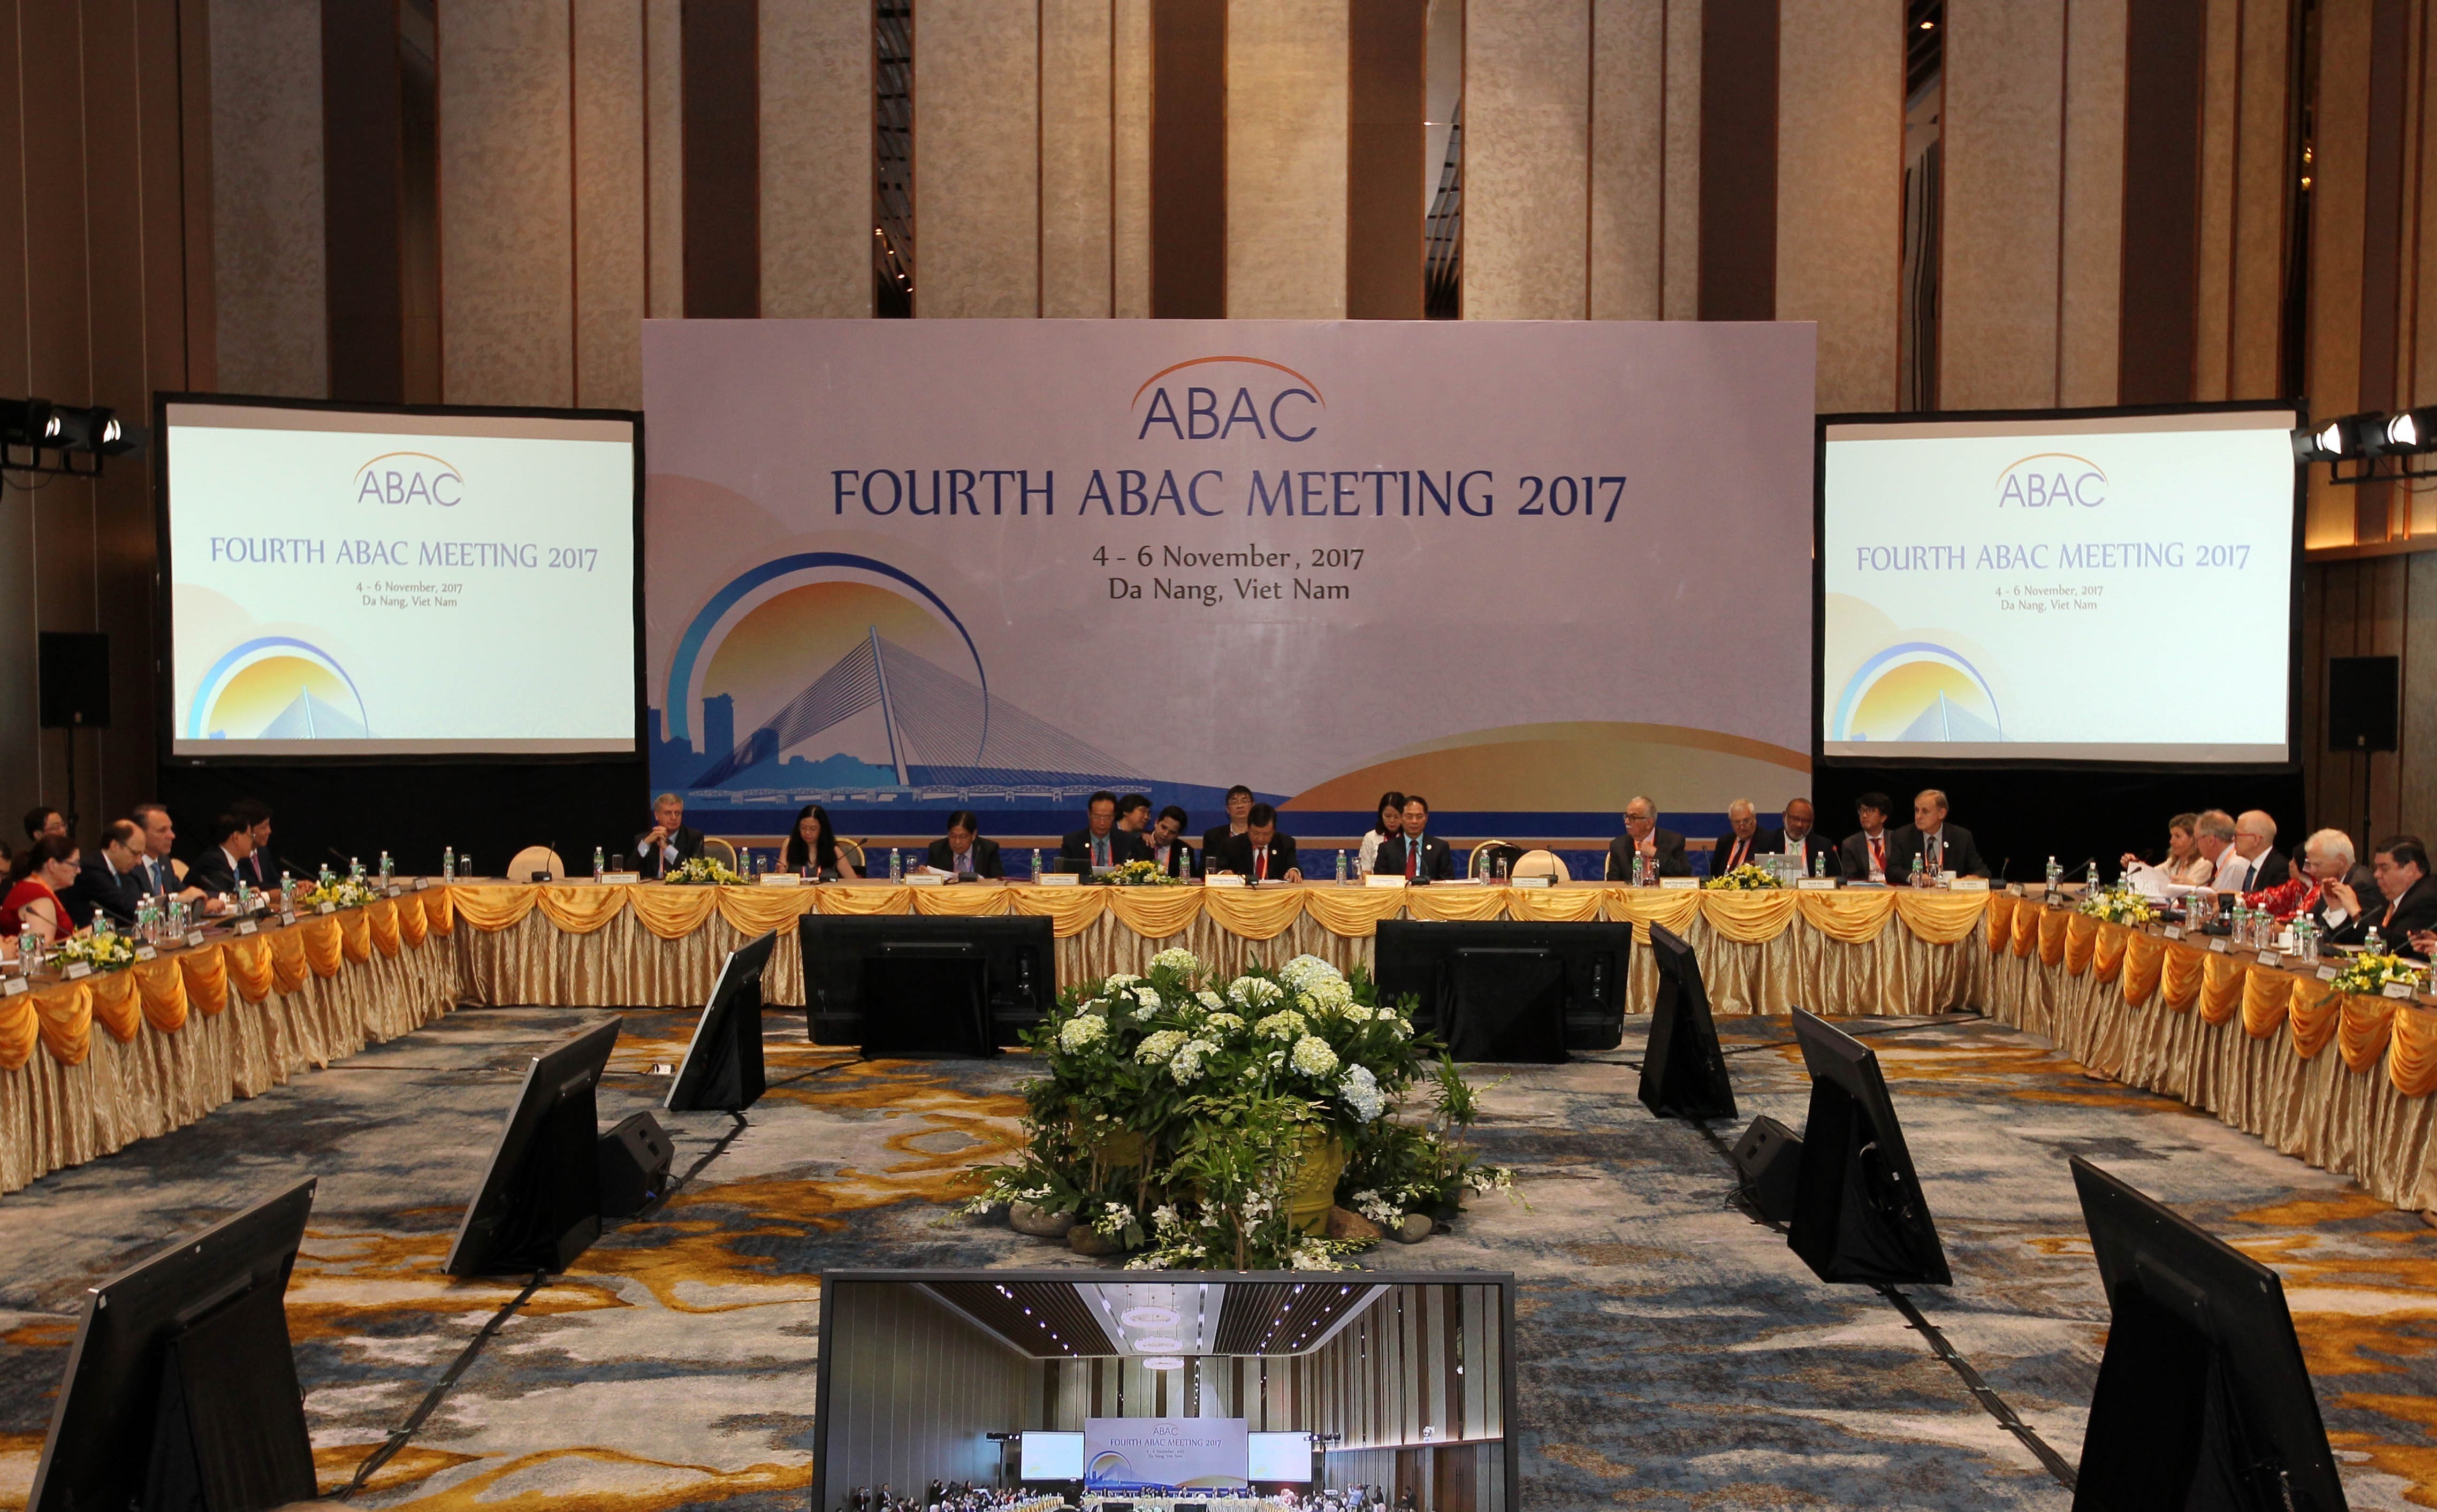 APEC Economic Leaders' Week 2017 kicked off in Danang